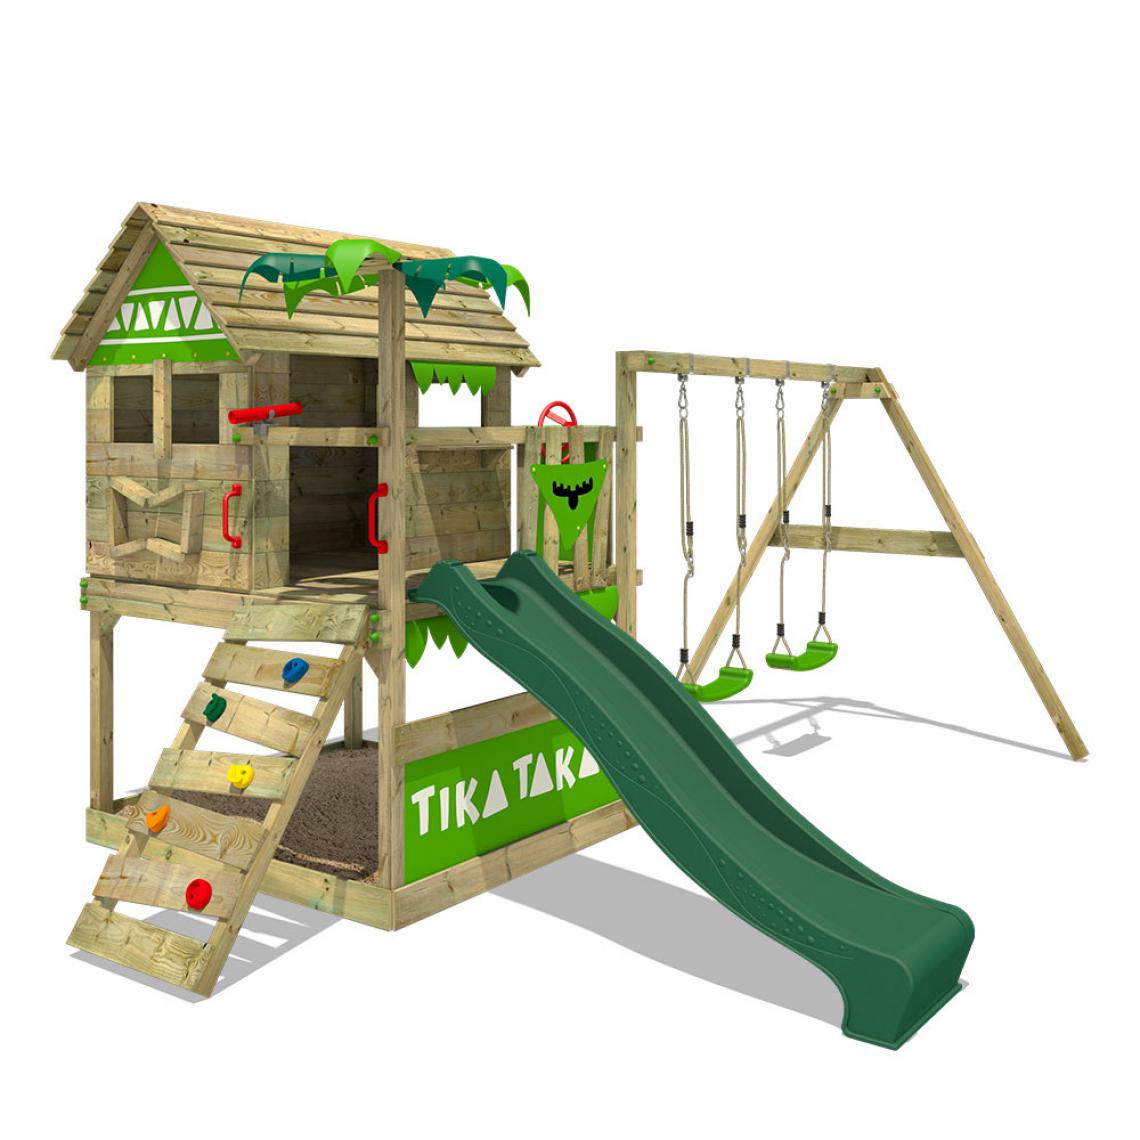 Fatmoose - Aire de jeux Portique bois TikaTaka avec balançoire et toboggan vert Cabane enfant extérieure avec bac à sable, échelle d'escalade & accessoires de jeux - Aire de jeux